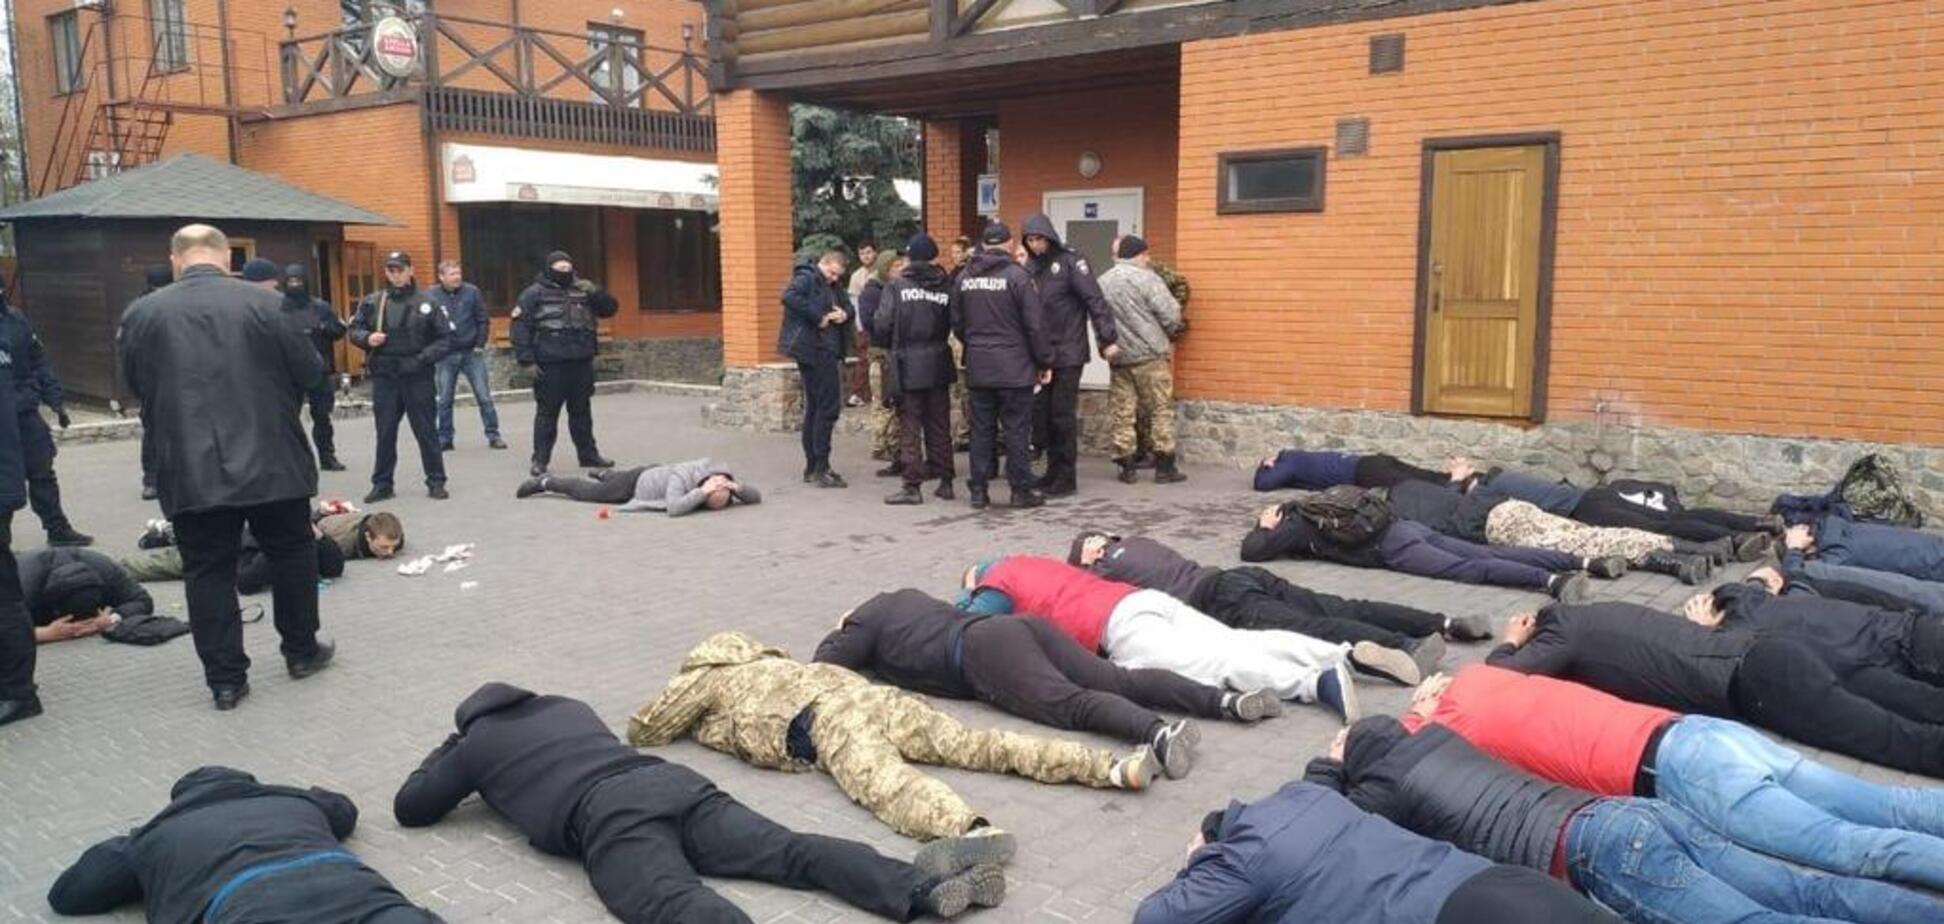 На Київщині рейдери захопили підприємство: втрутилася поліція